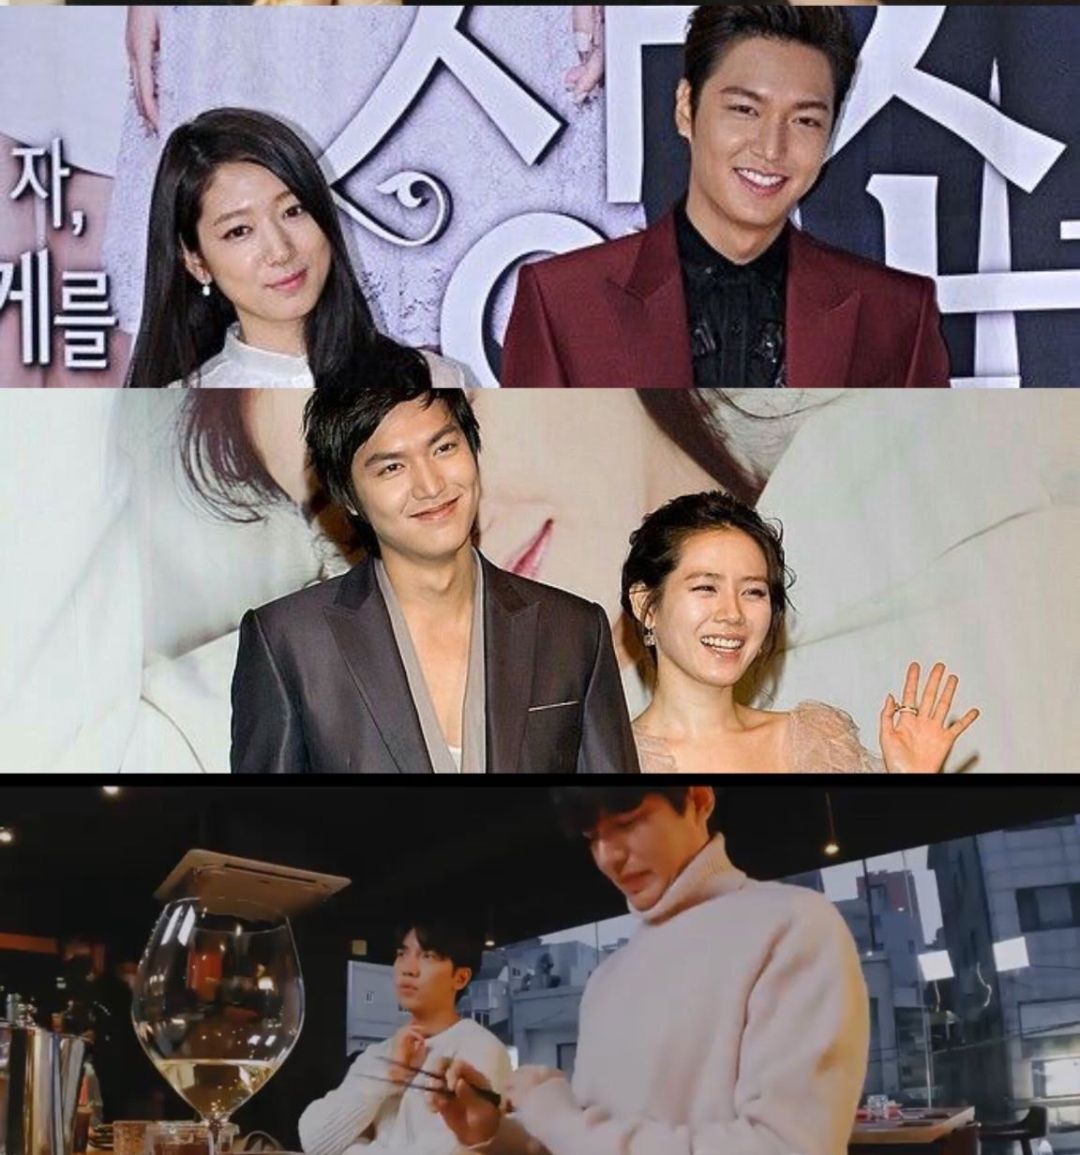 Fakta Kocak Diungkap Netizen Seputar Pernikahan dan Lee Min Ho, Usai Reaksinya Atas Kabar Nikah Lee Seung Gi/